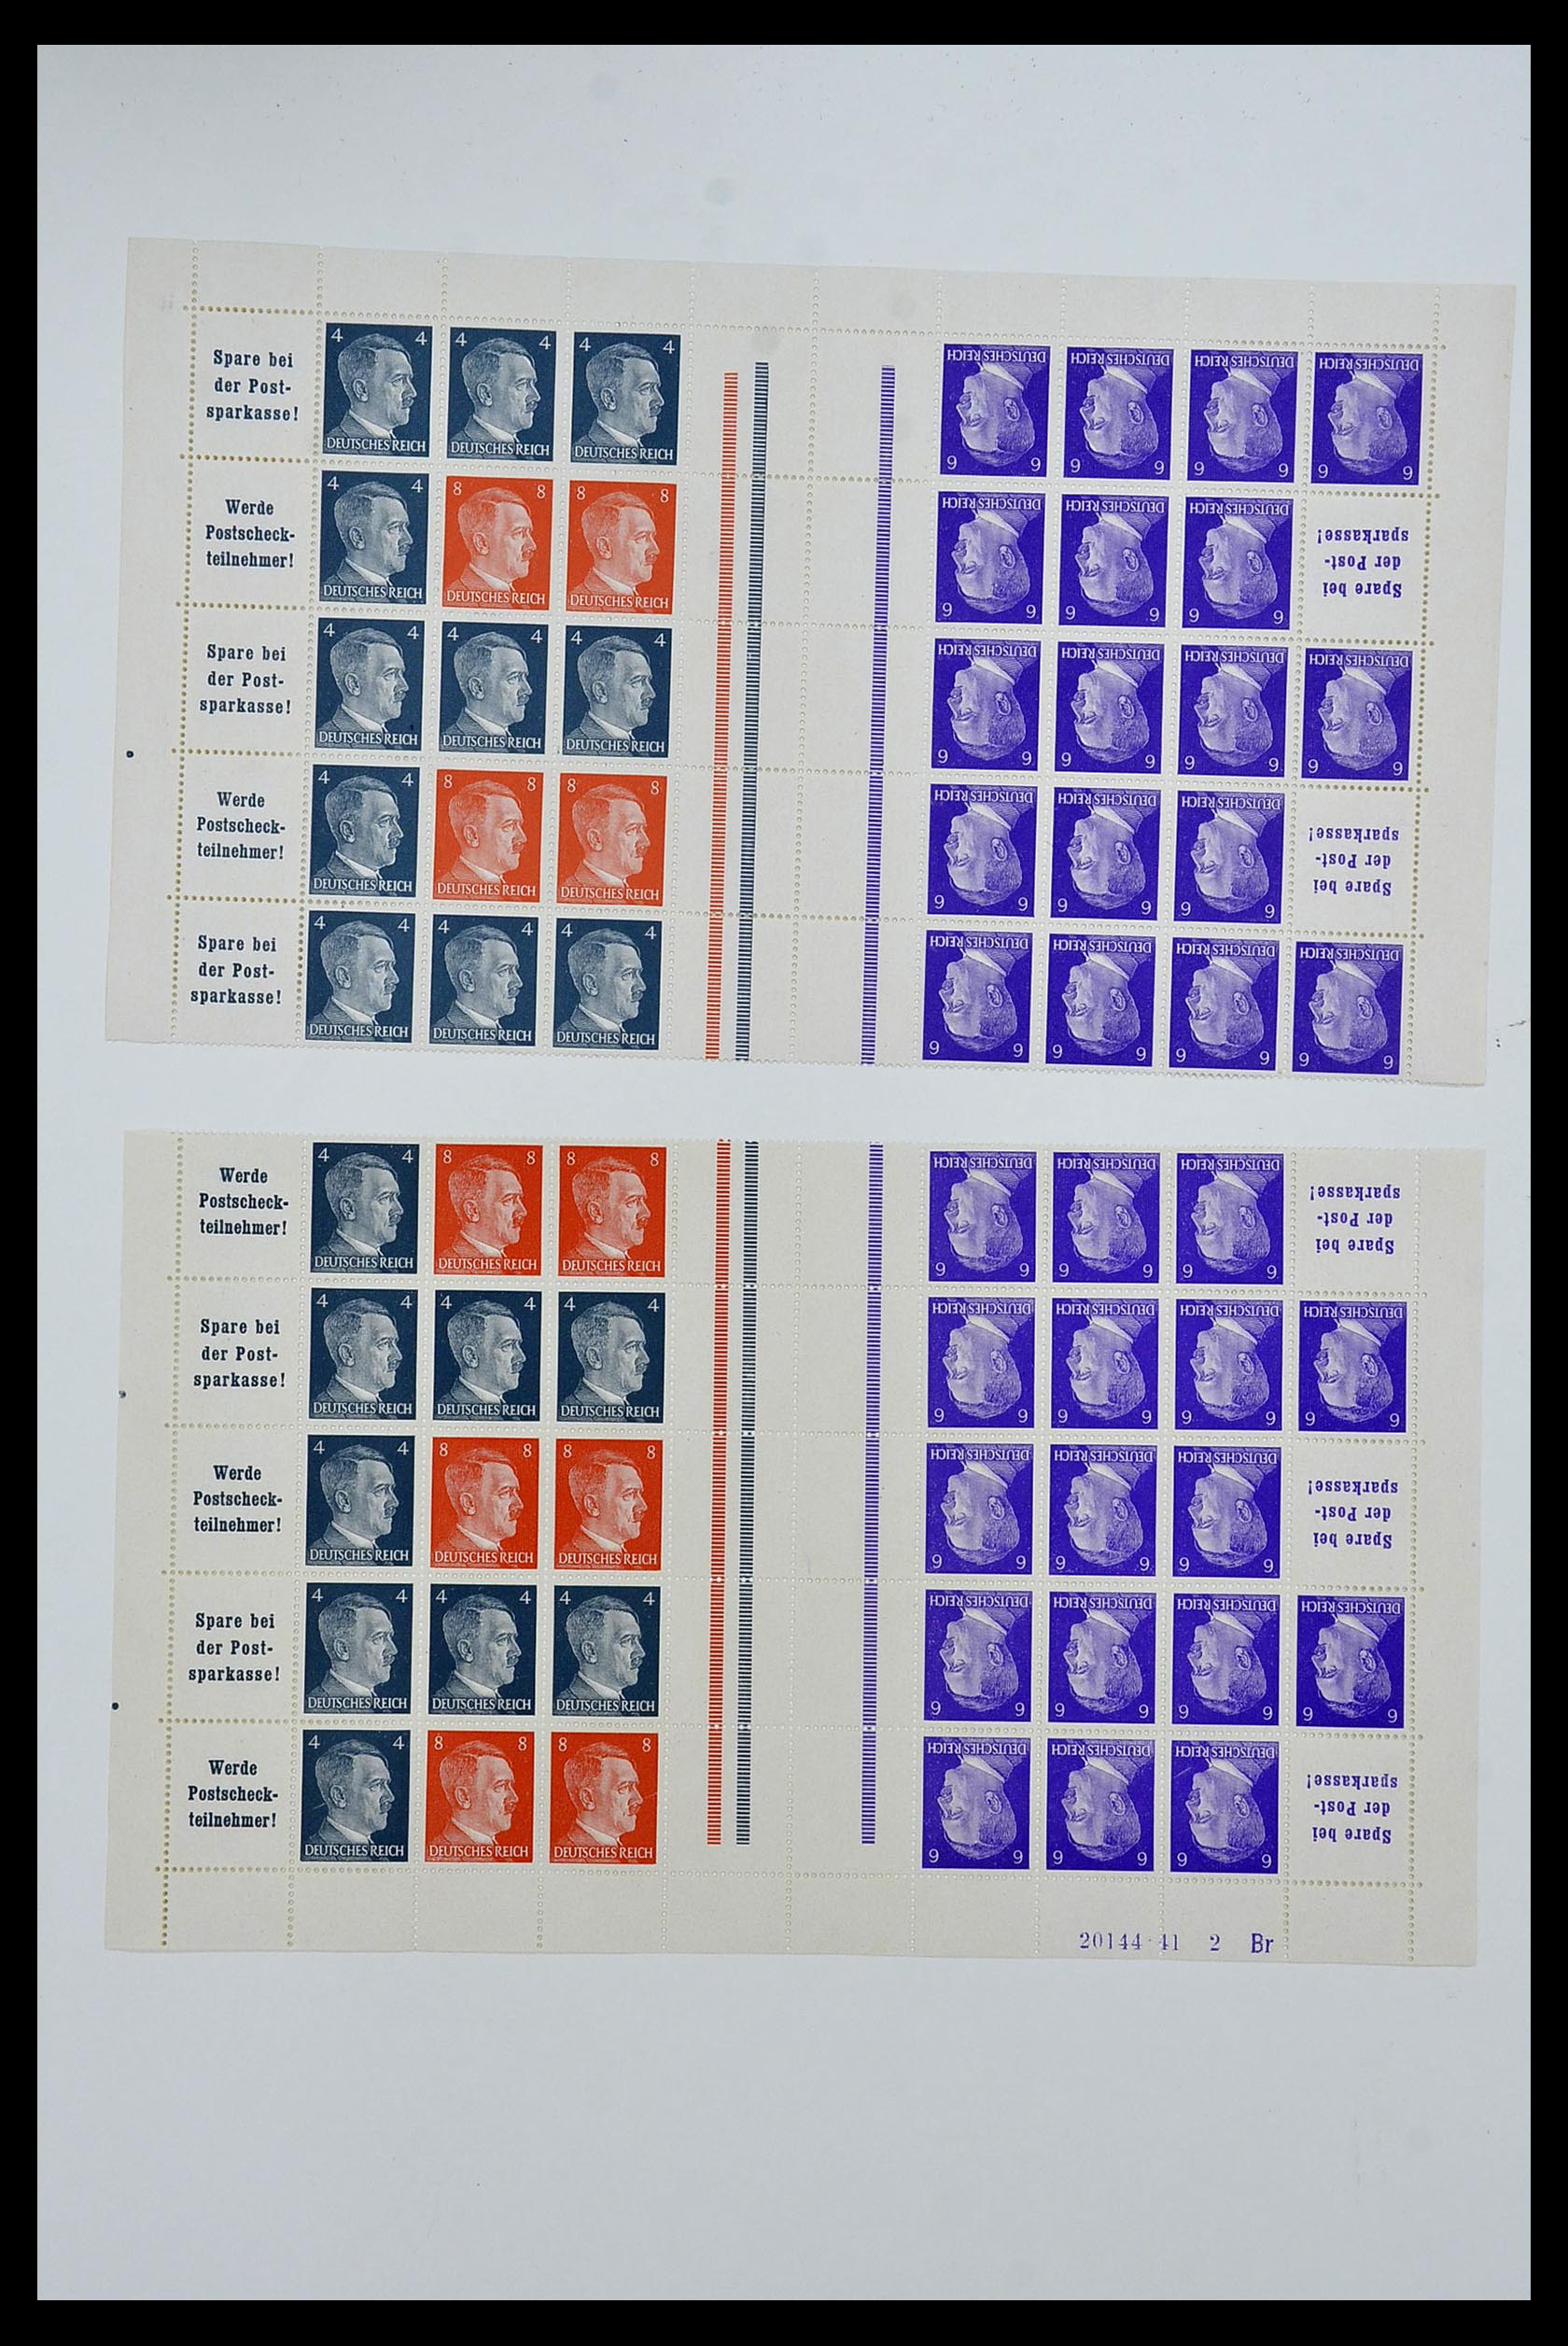 34164 073 - Stamp collection 34164 German Reich Markenheftchenbogen 1933-1942.